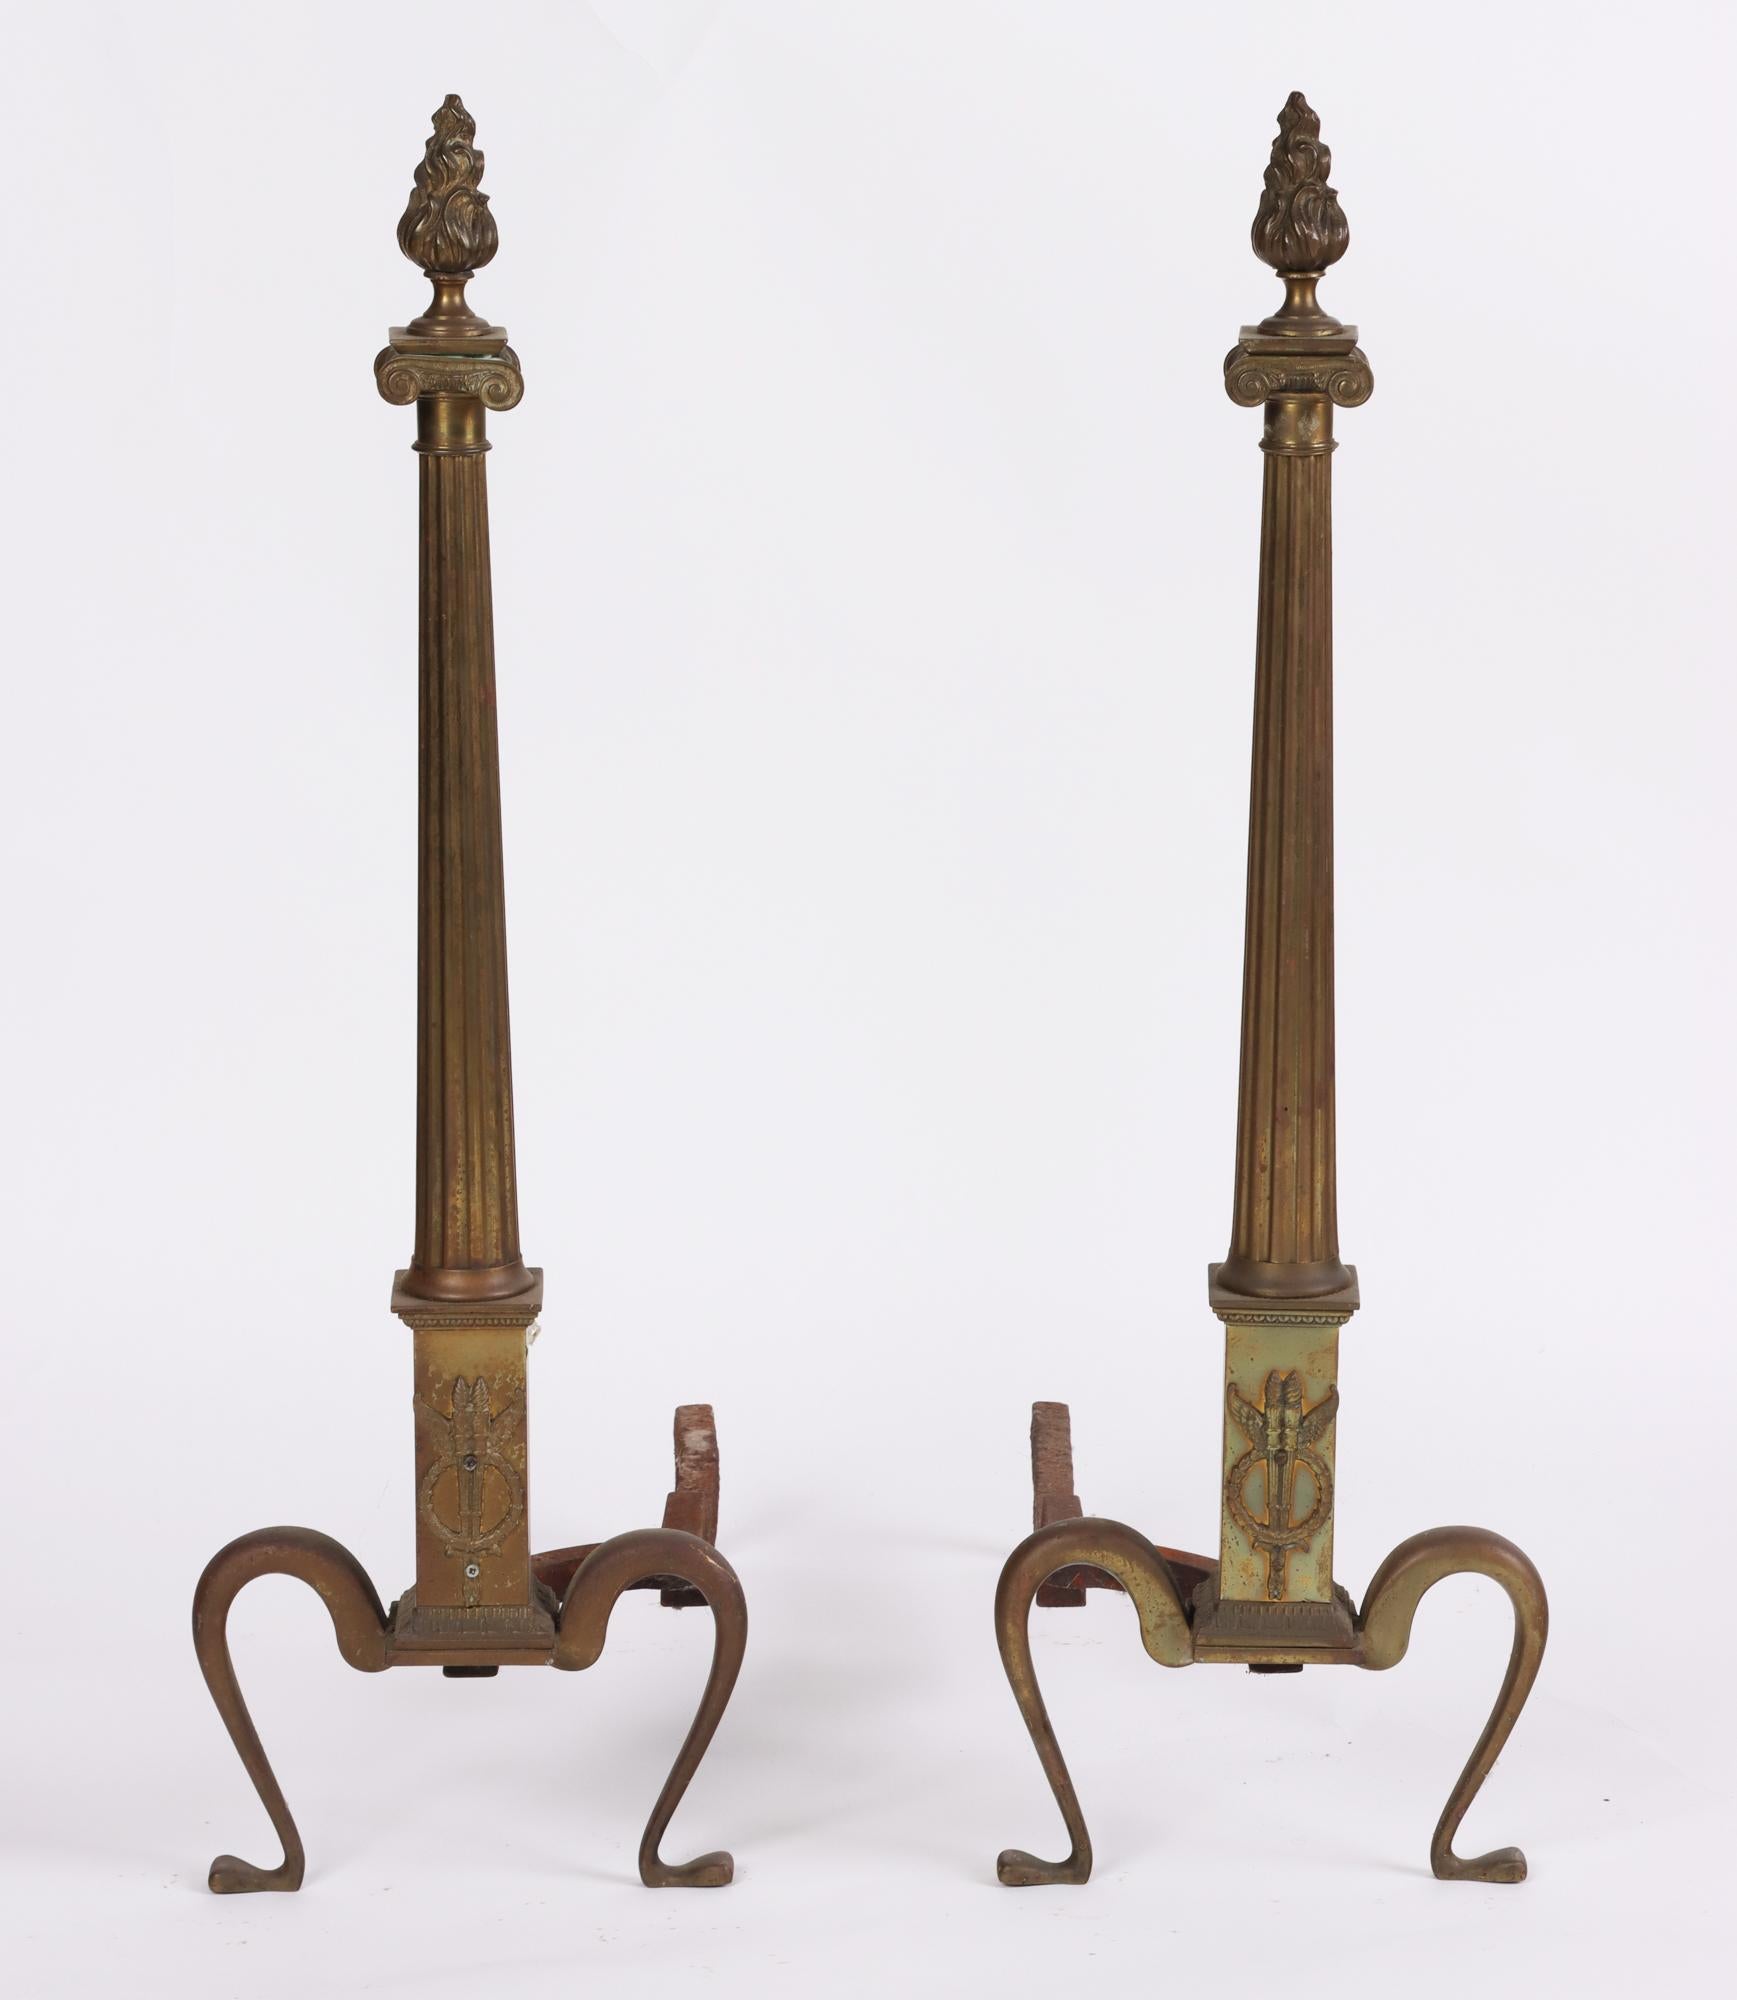 Ein Paar neoklassizistischer Messing-Feuerböcke des frühen 20. Jahrhunderts mit flammenförmigen Endstücken und Säulenschaft und übermäßig geschwungenen Beinen.